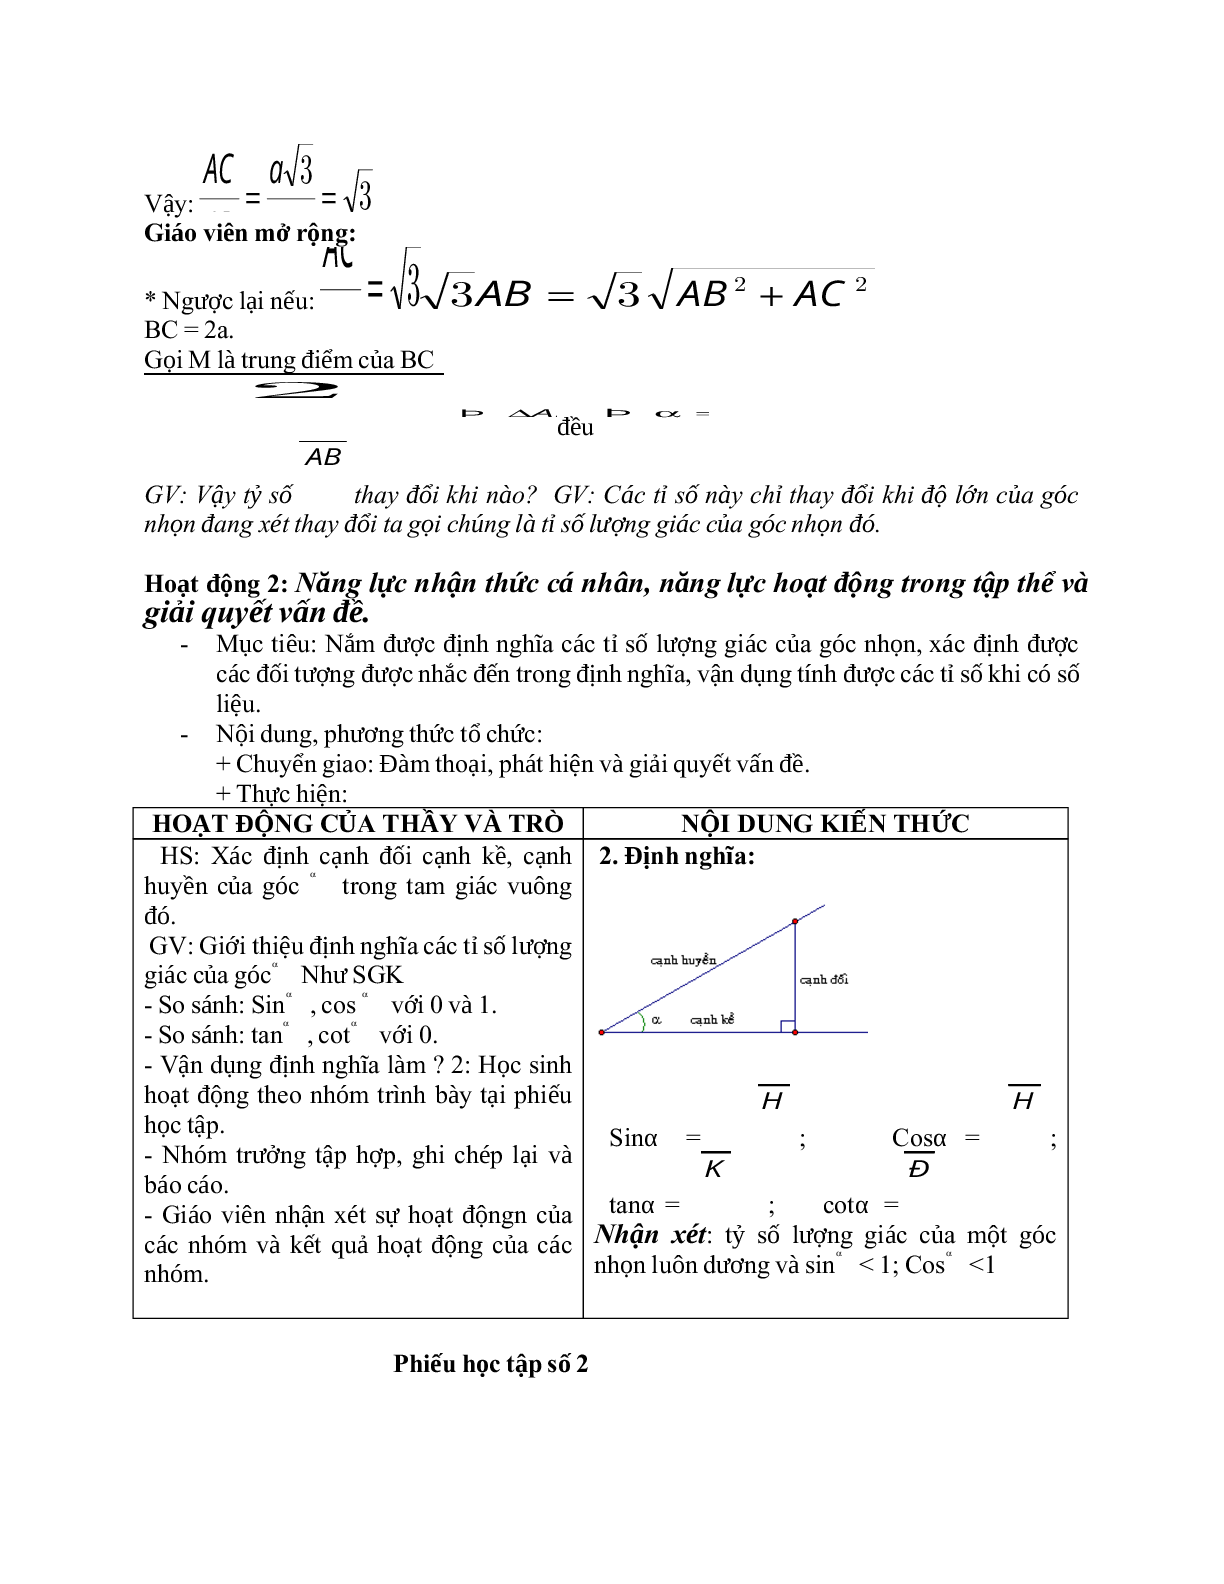 Giáo án Hình học 9 chương 1 bài 1: Tỉ số lượng giác của góc nhọn mới nhất (trang 6)